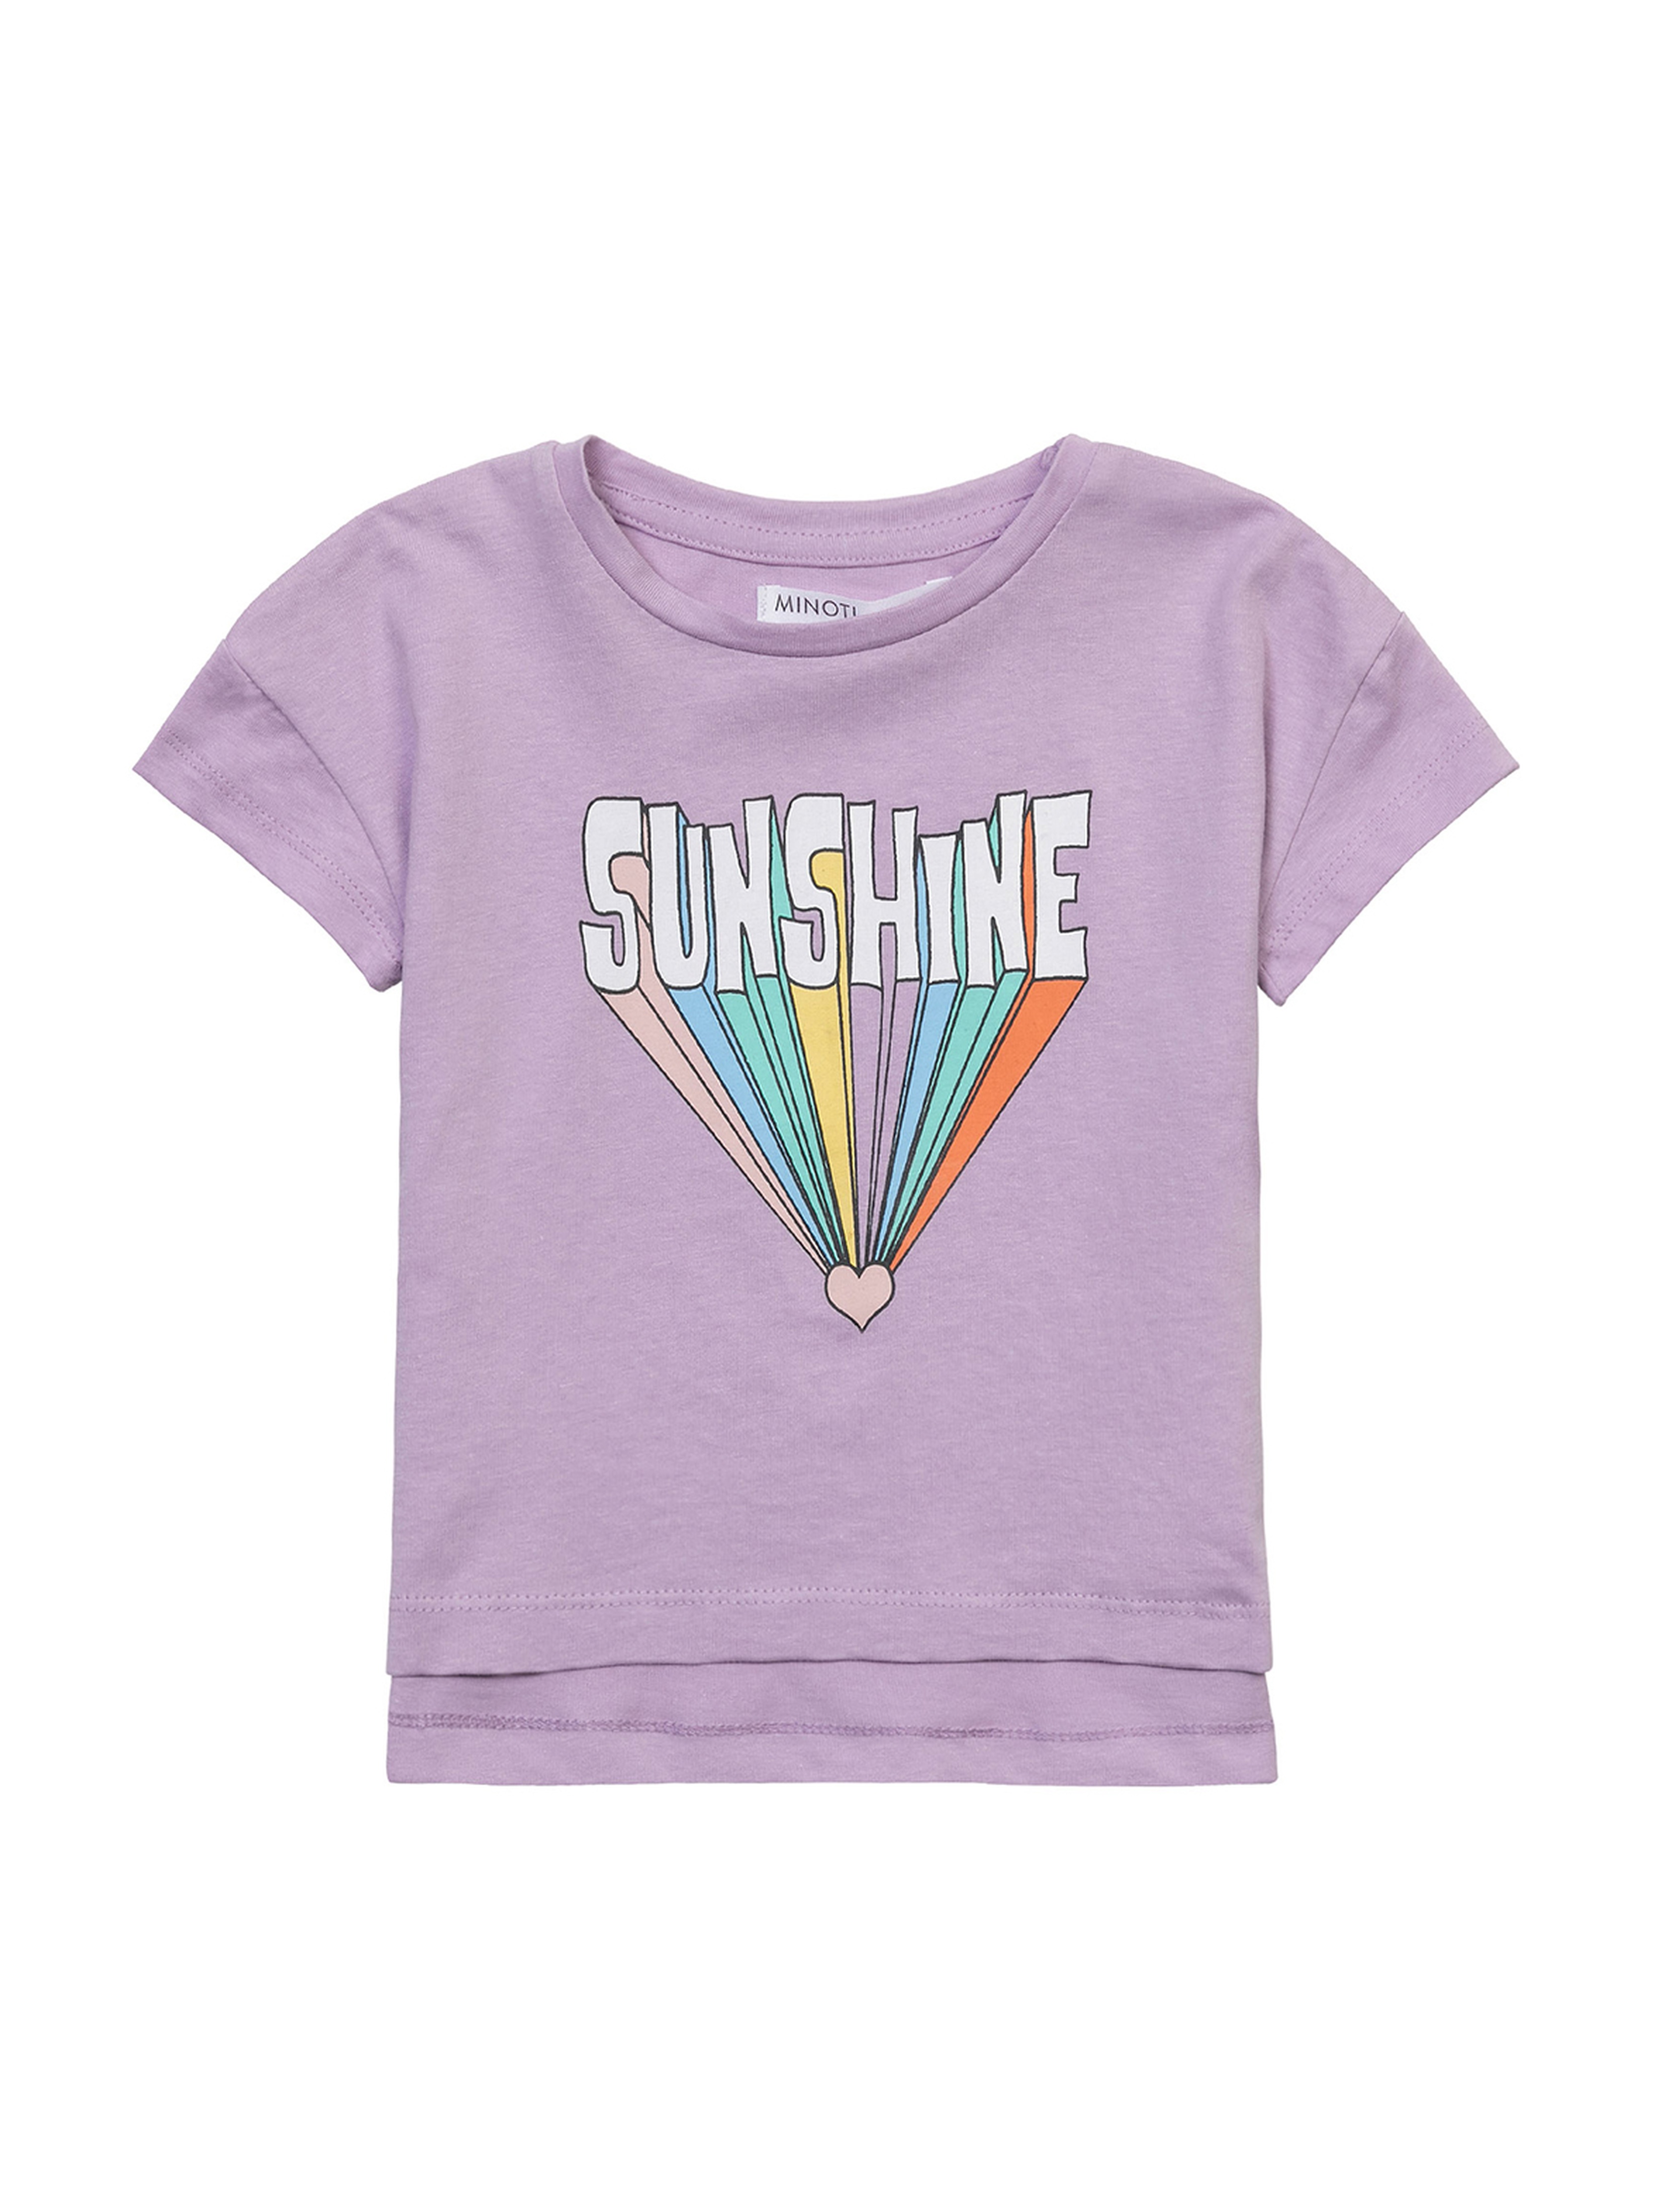 Fioletowy t-shirt niemowlęcy z bawełny- Sunshine